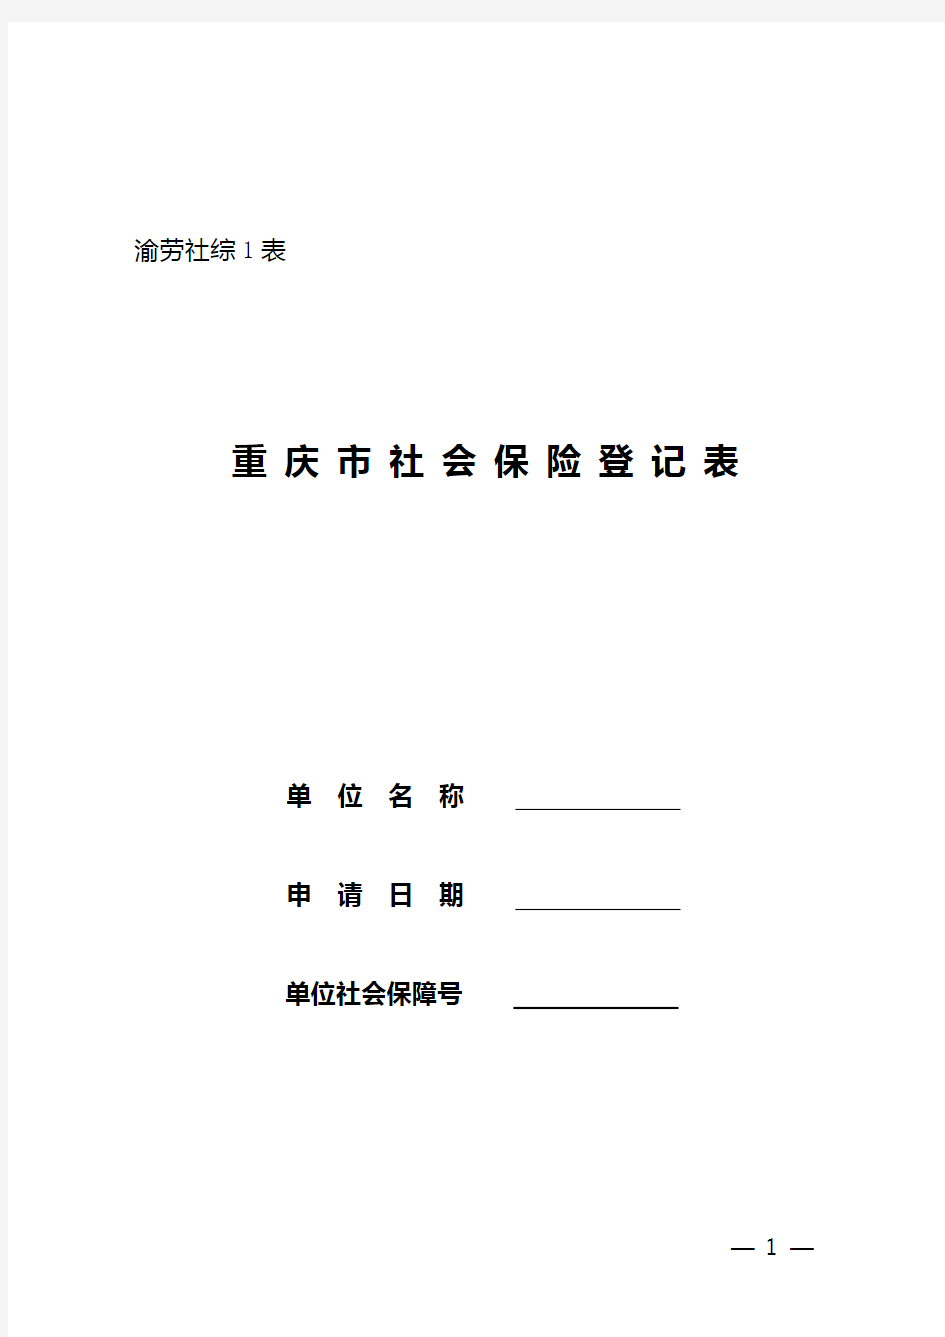 重庆市社会保险登记表(官方版本)